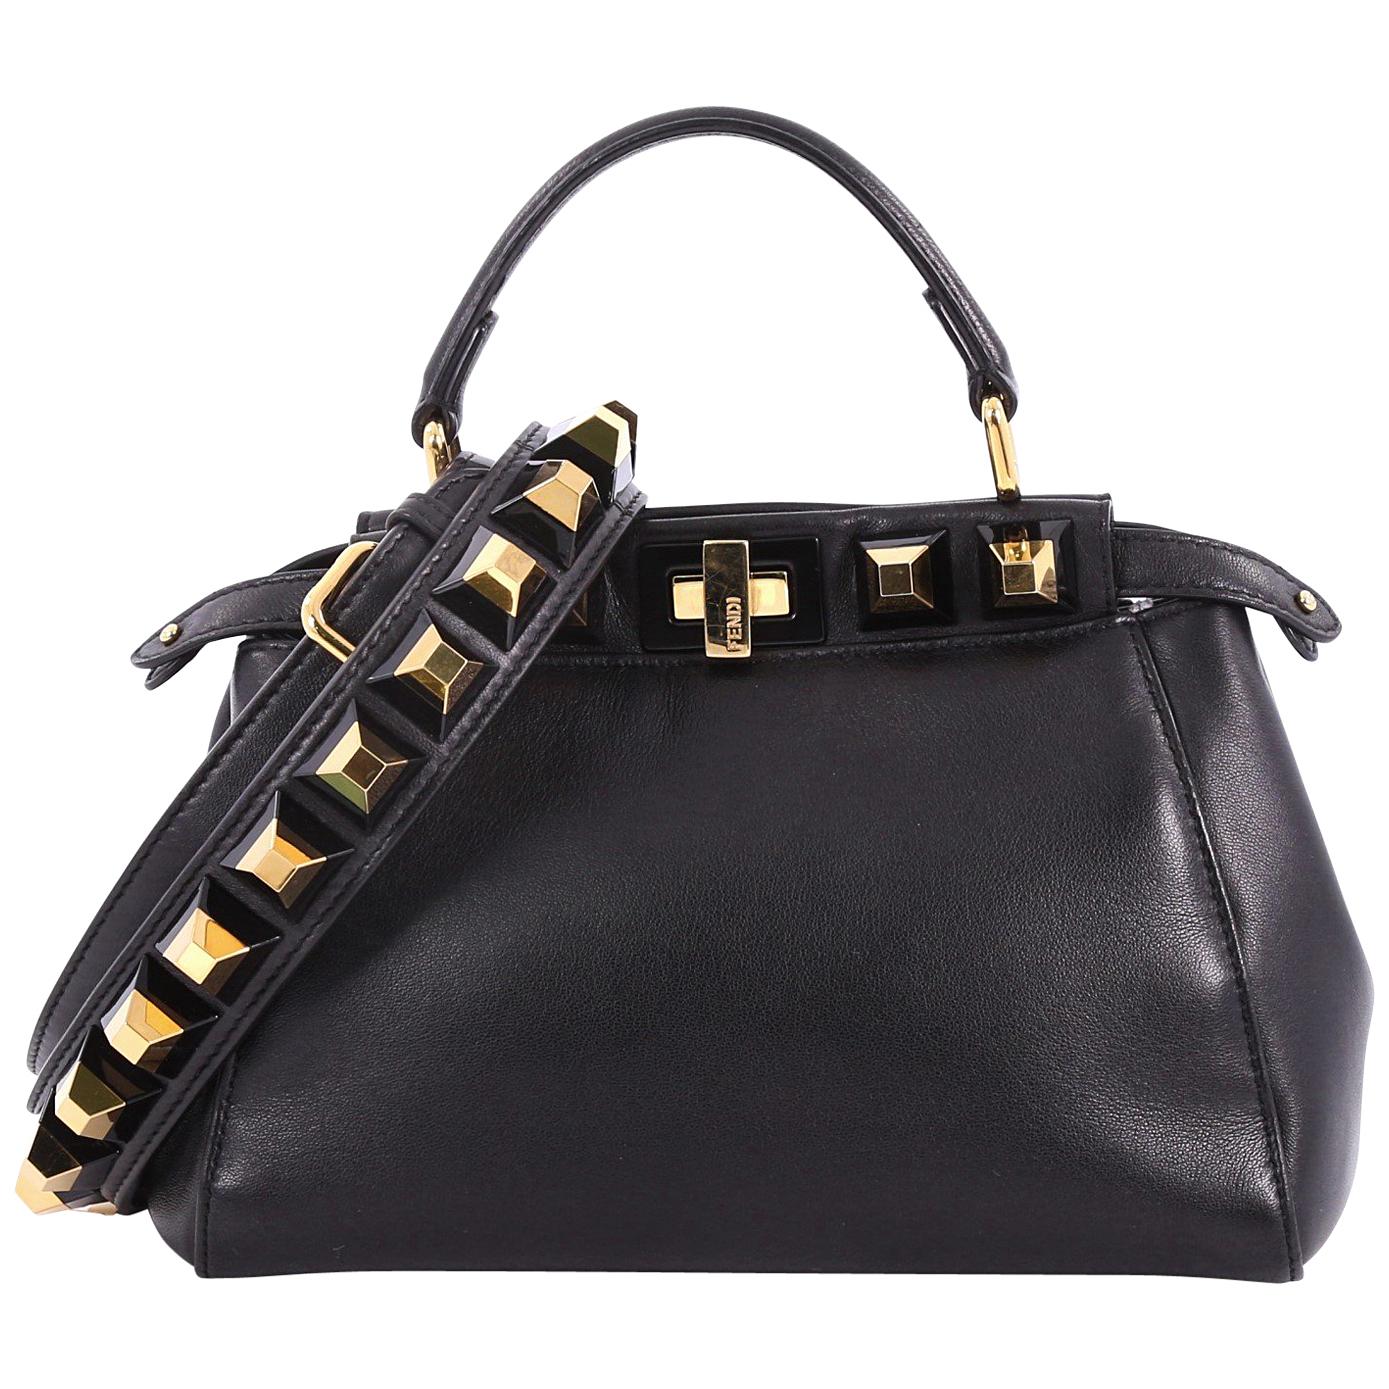 Fendi Peekaboo Handbag Leather with Studded Detail Mini